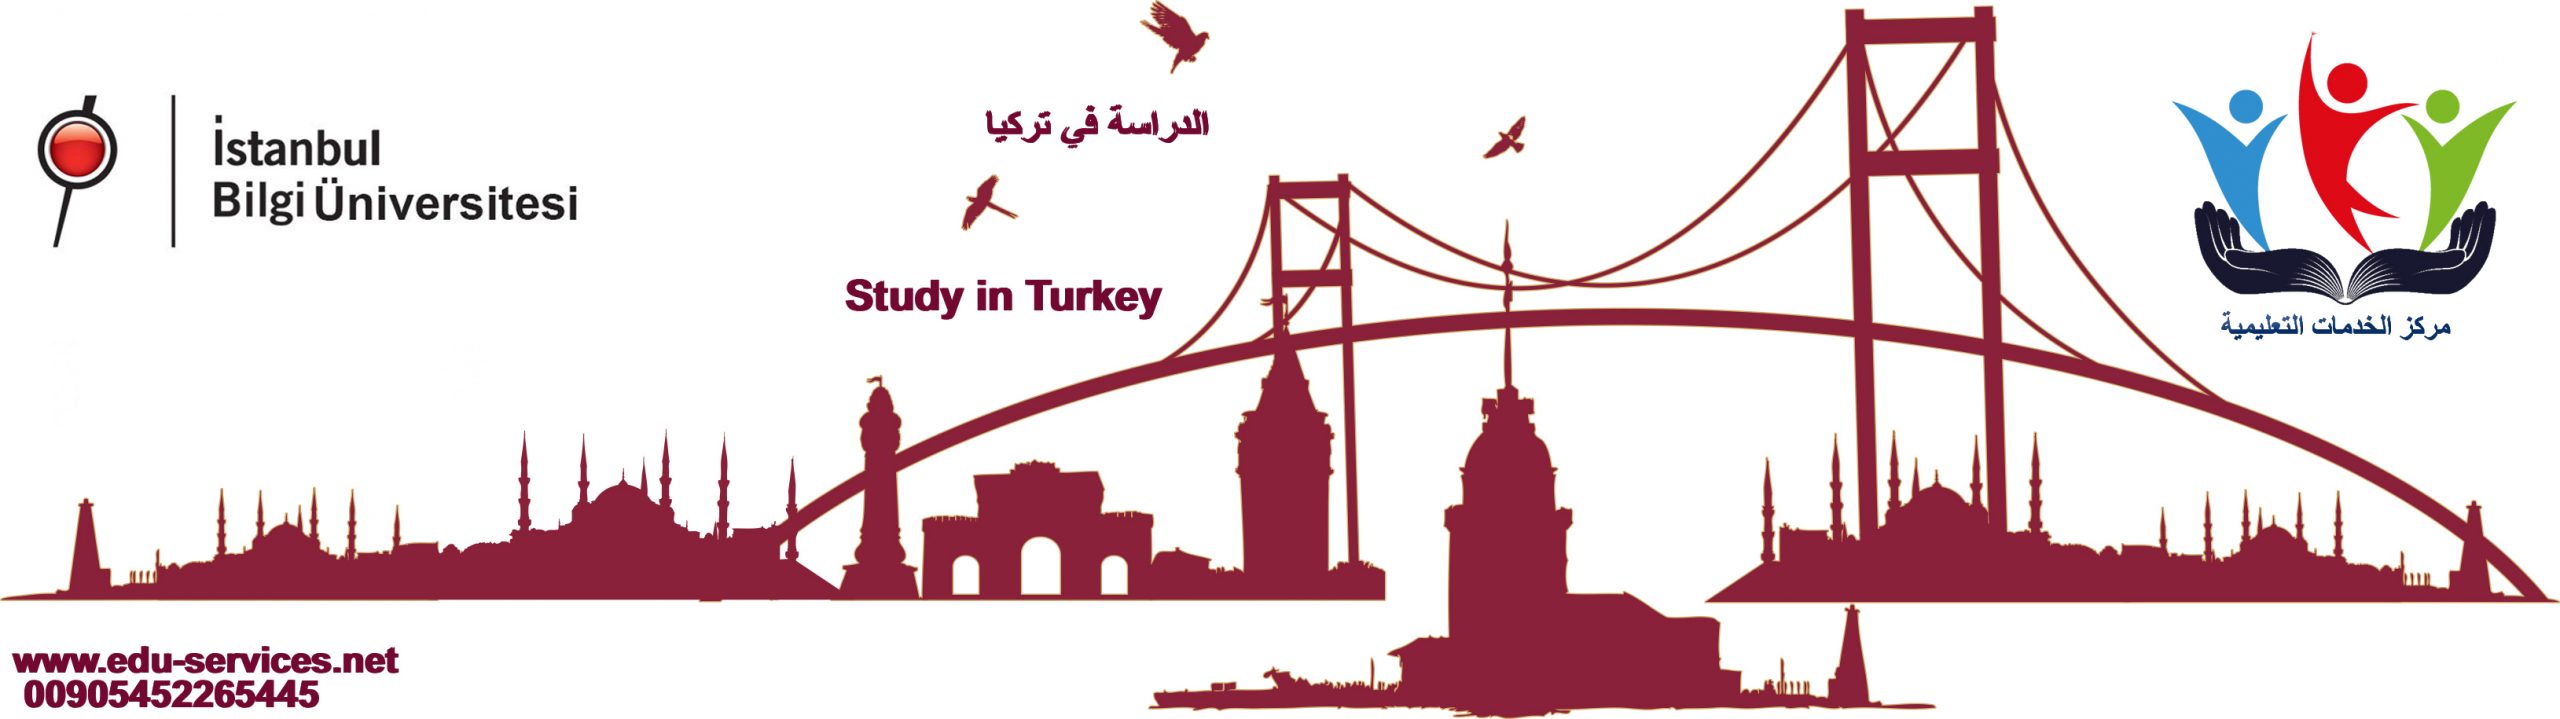 الدراسة في تركيا-جامعة اسطنبول بيلجي